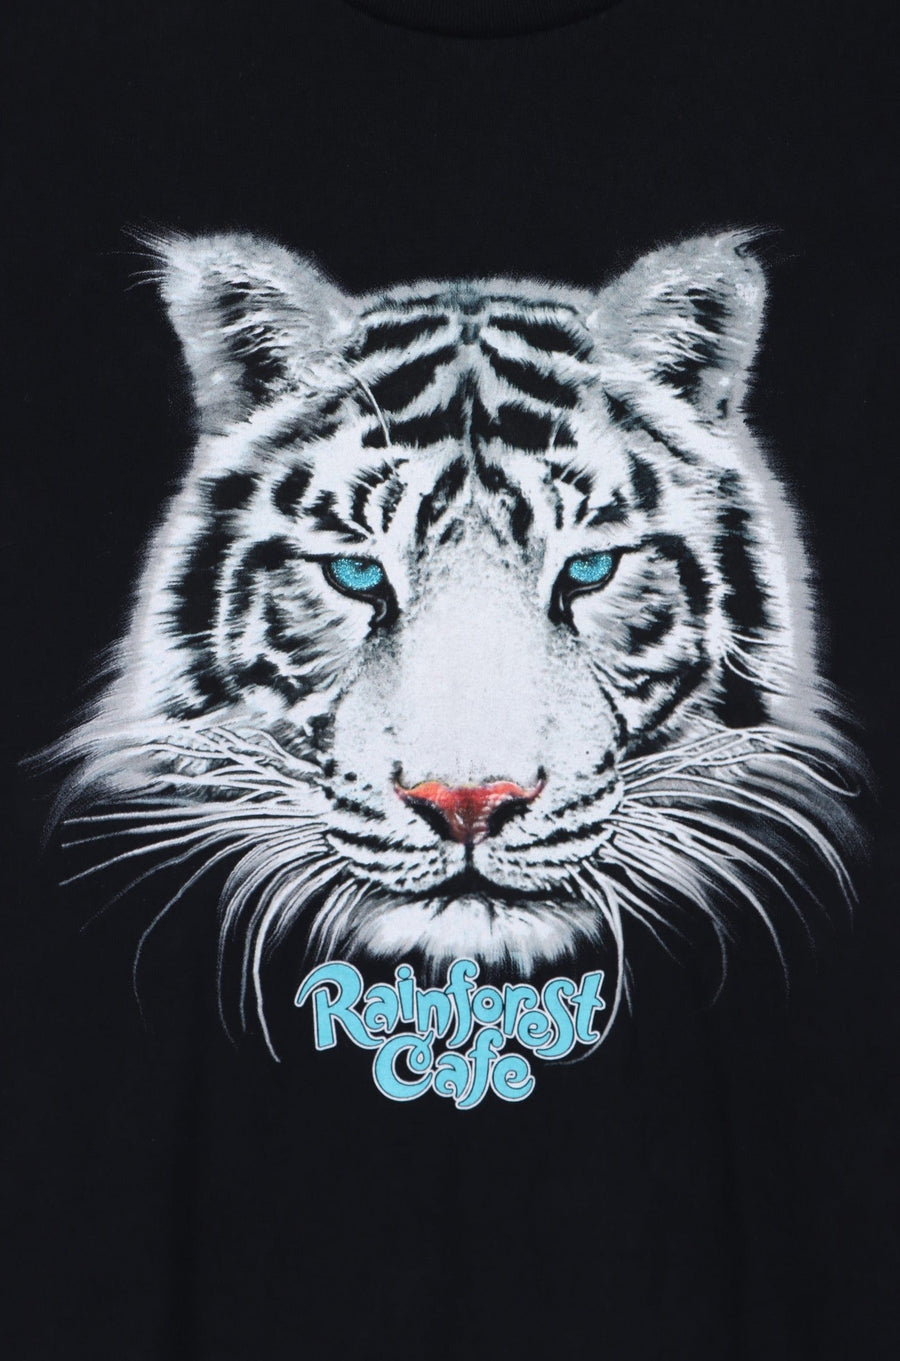 RAINFOREST CAFE White Tiger Glitter Eyes T-Shirt (L)